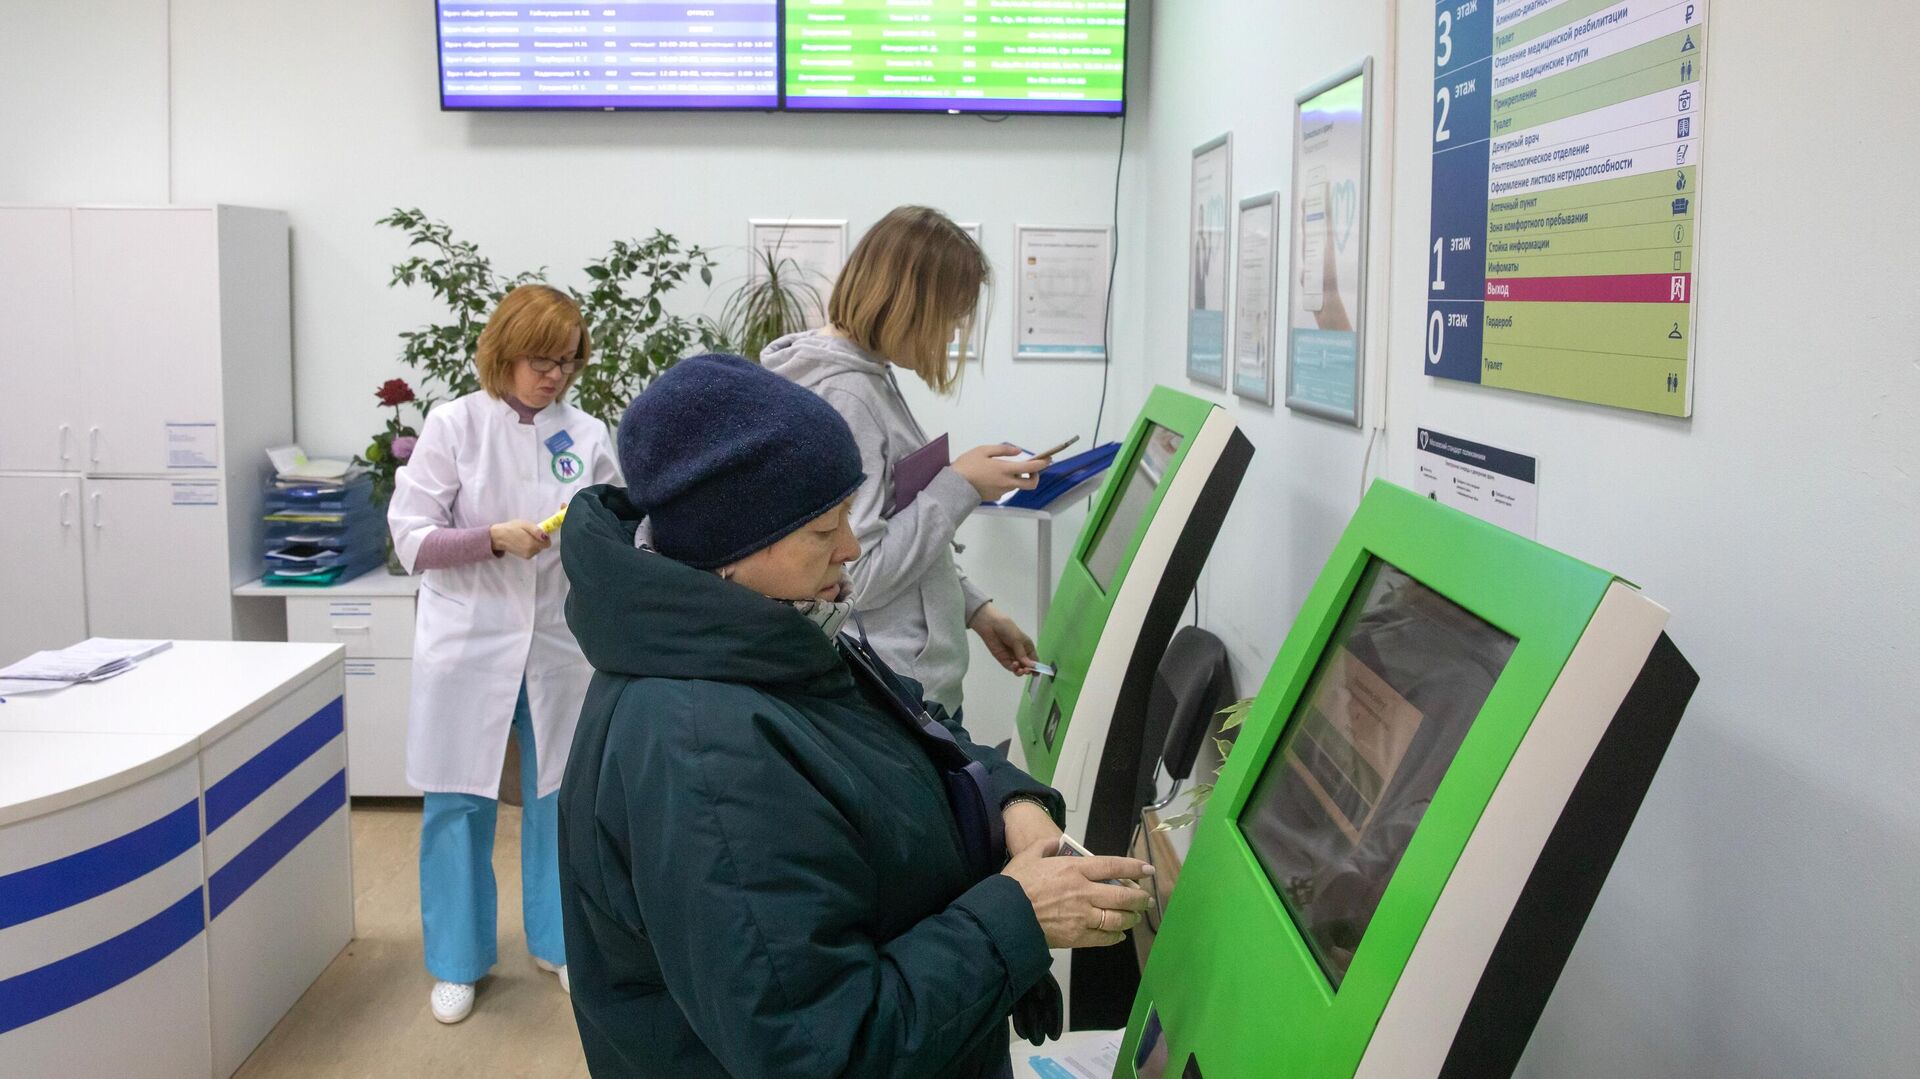  Пациенты записываются на прием к врачу через электронные терминалы в Москве   - РИА Новости, 1920, 01.02.2021